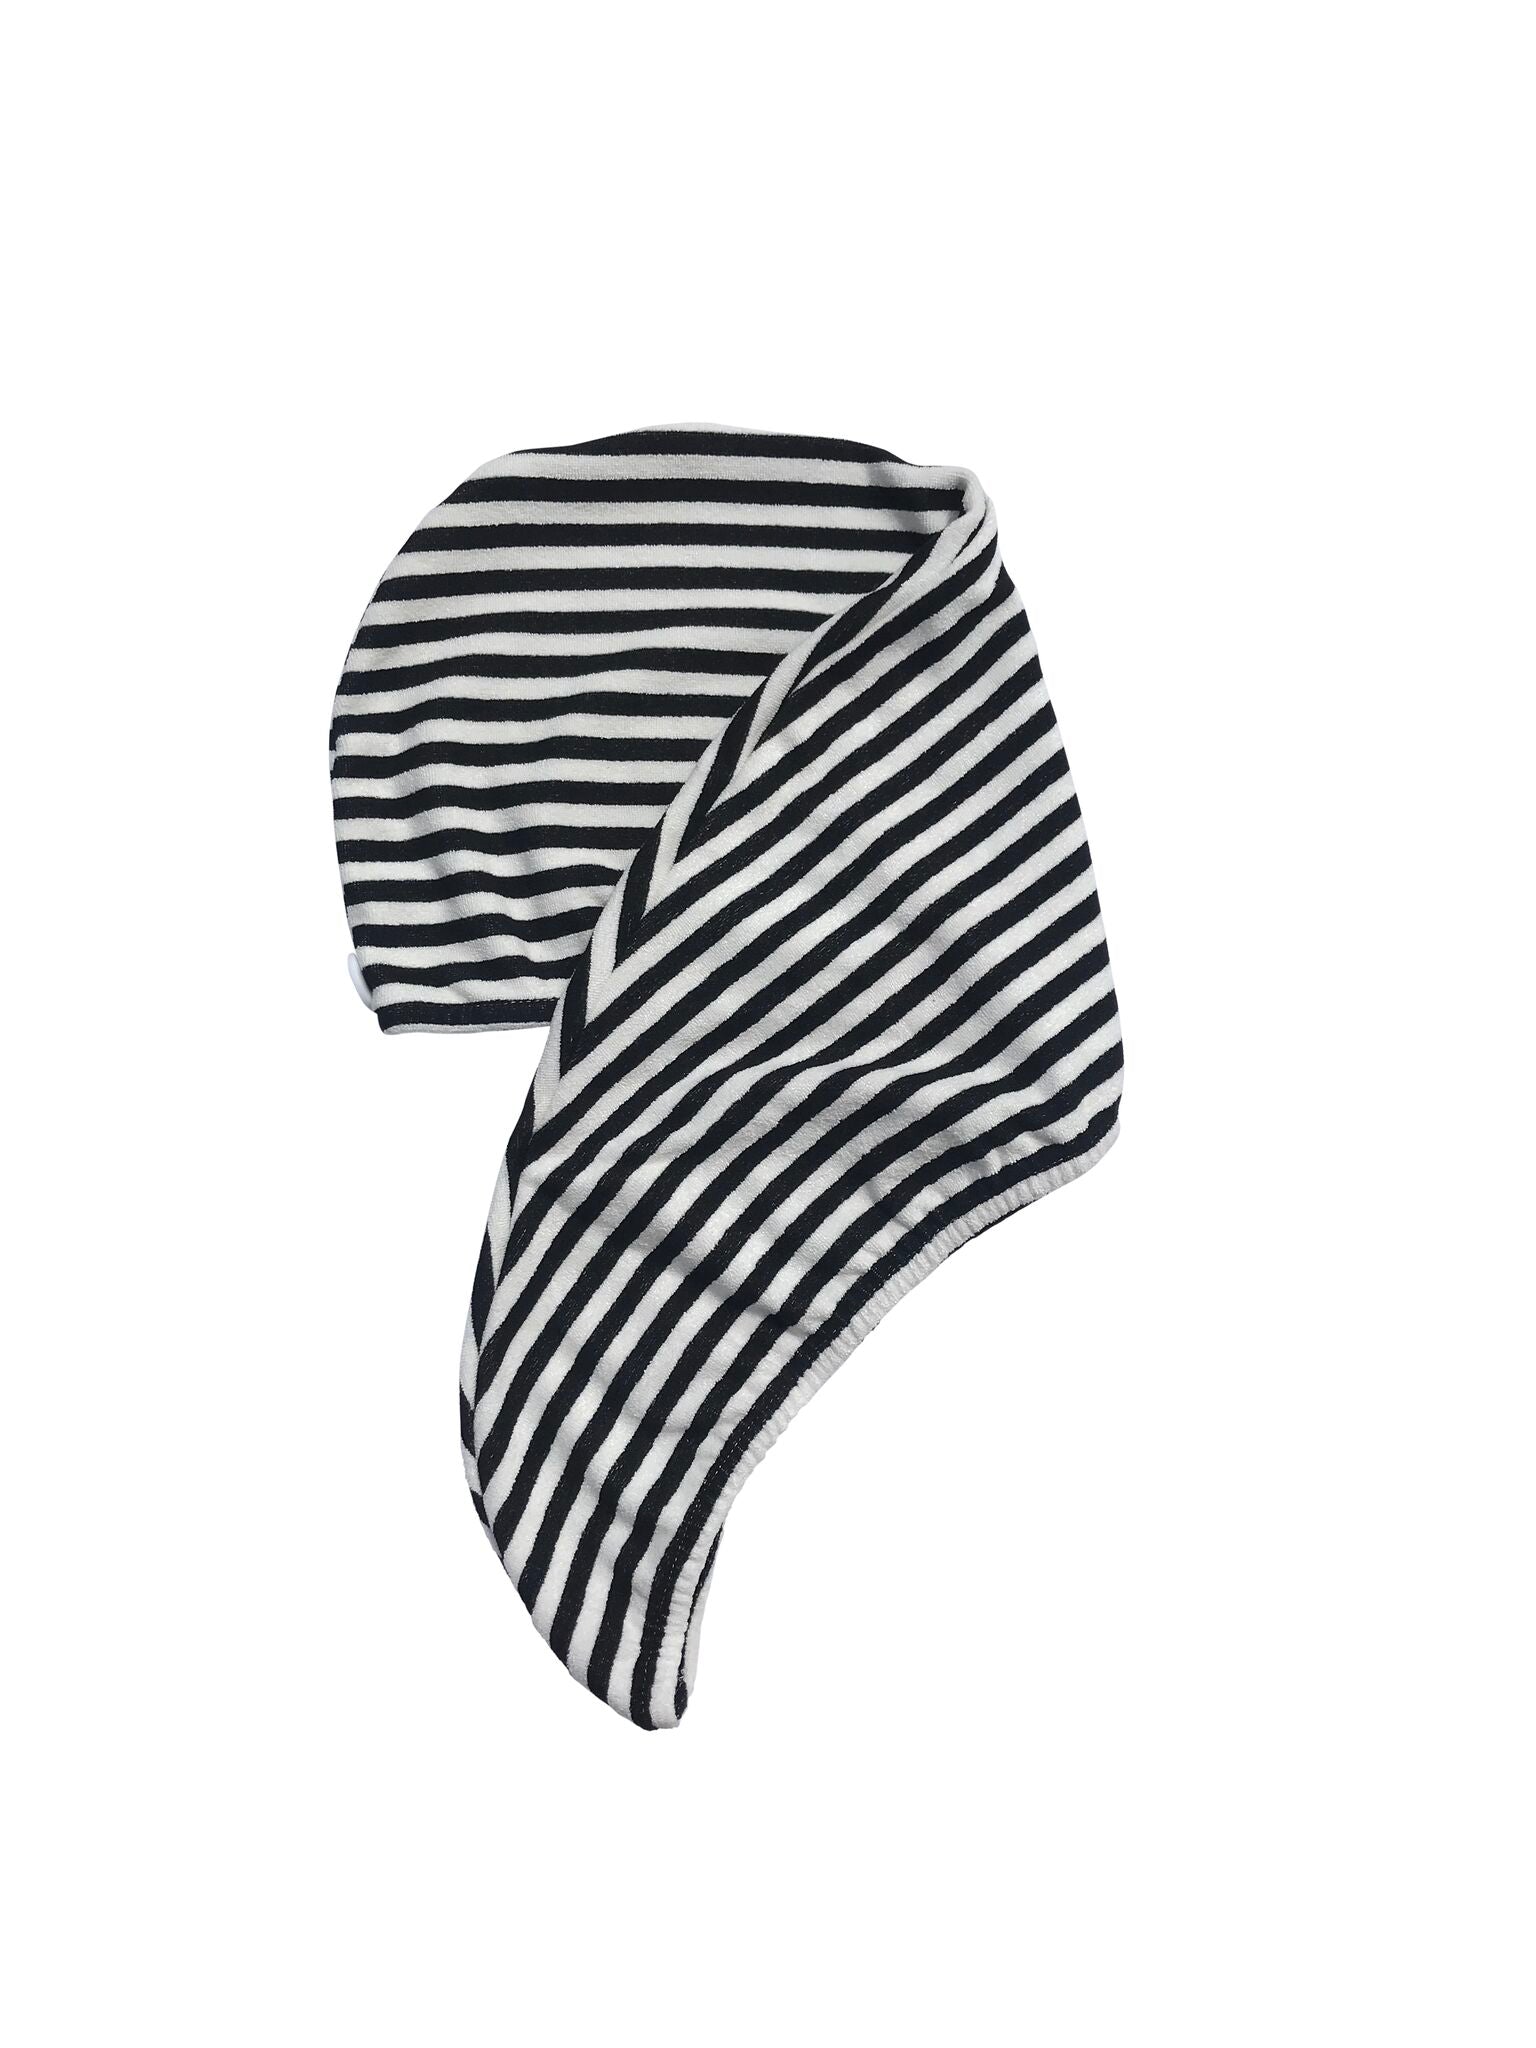 RIVA Hair Towel Wrap in Monochrome Stripe